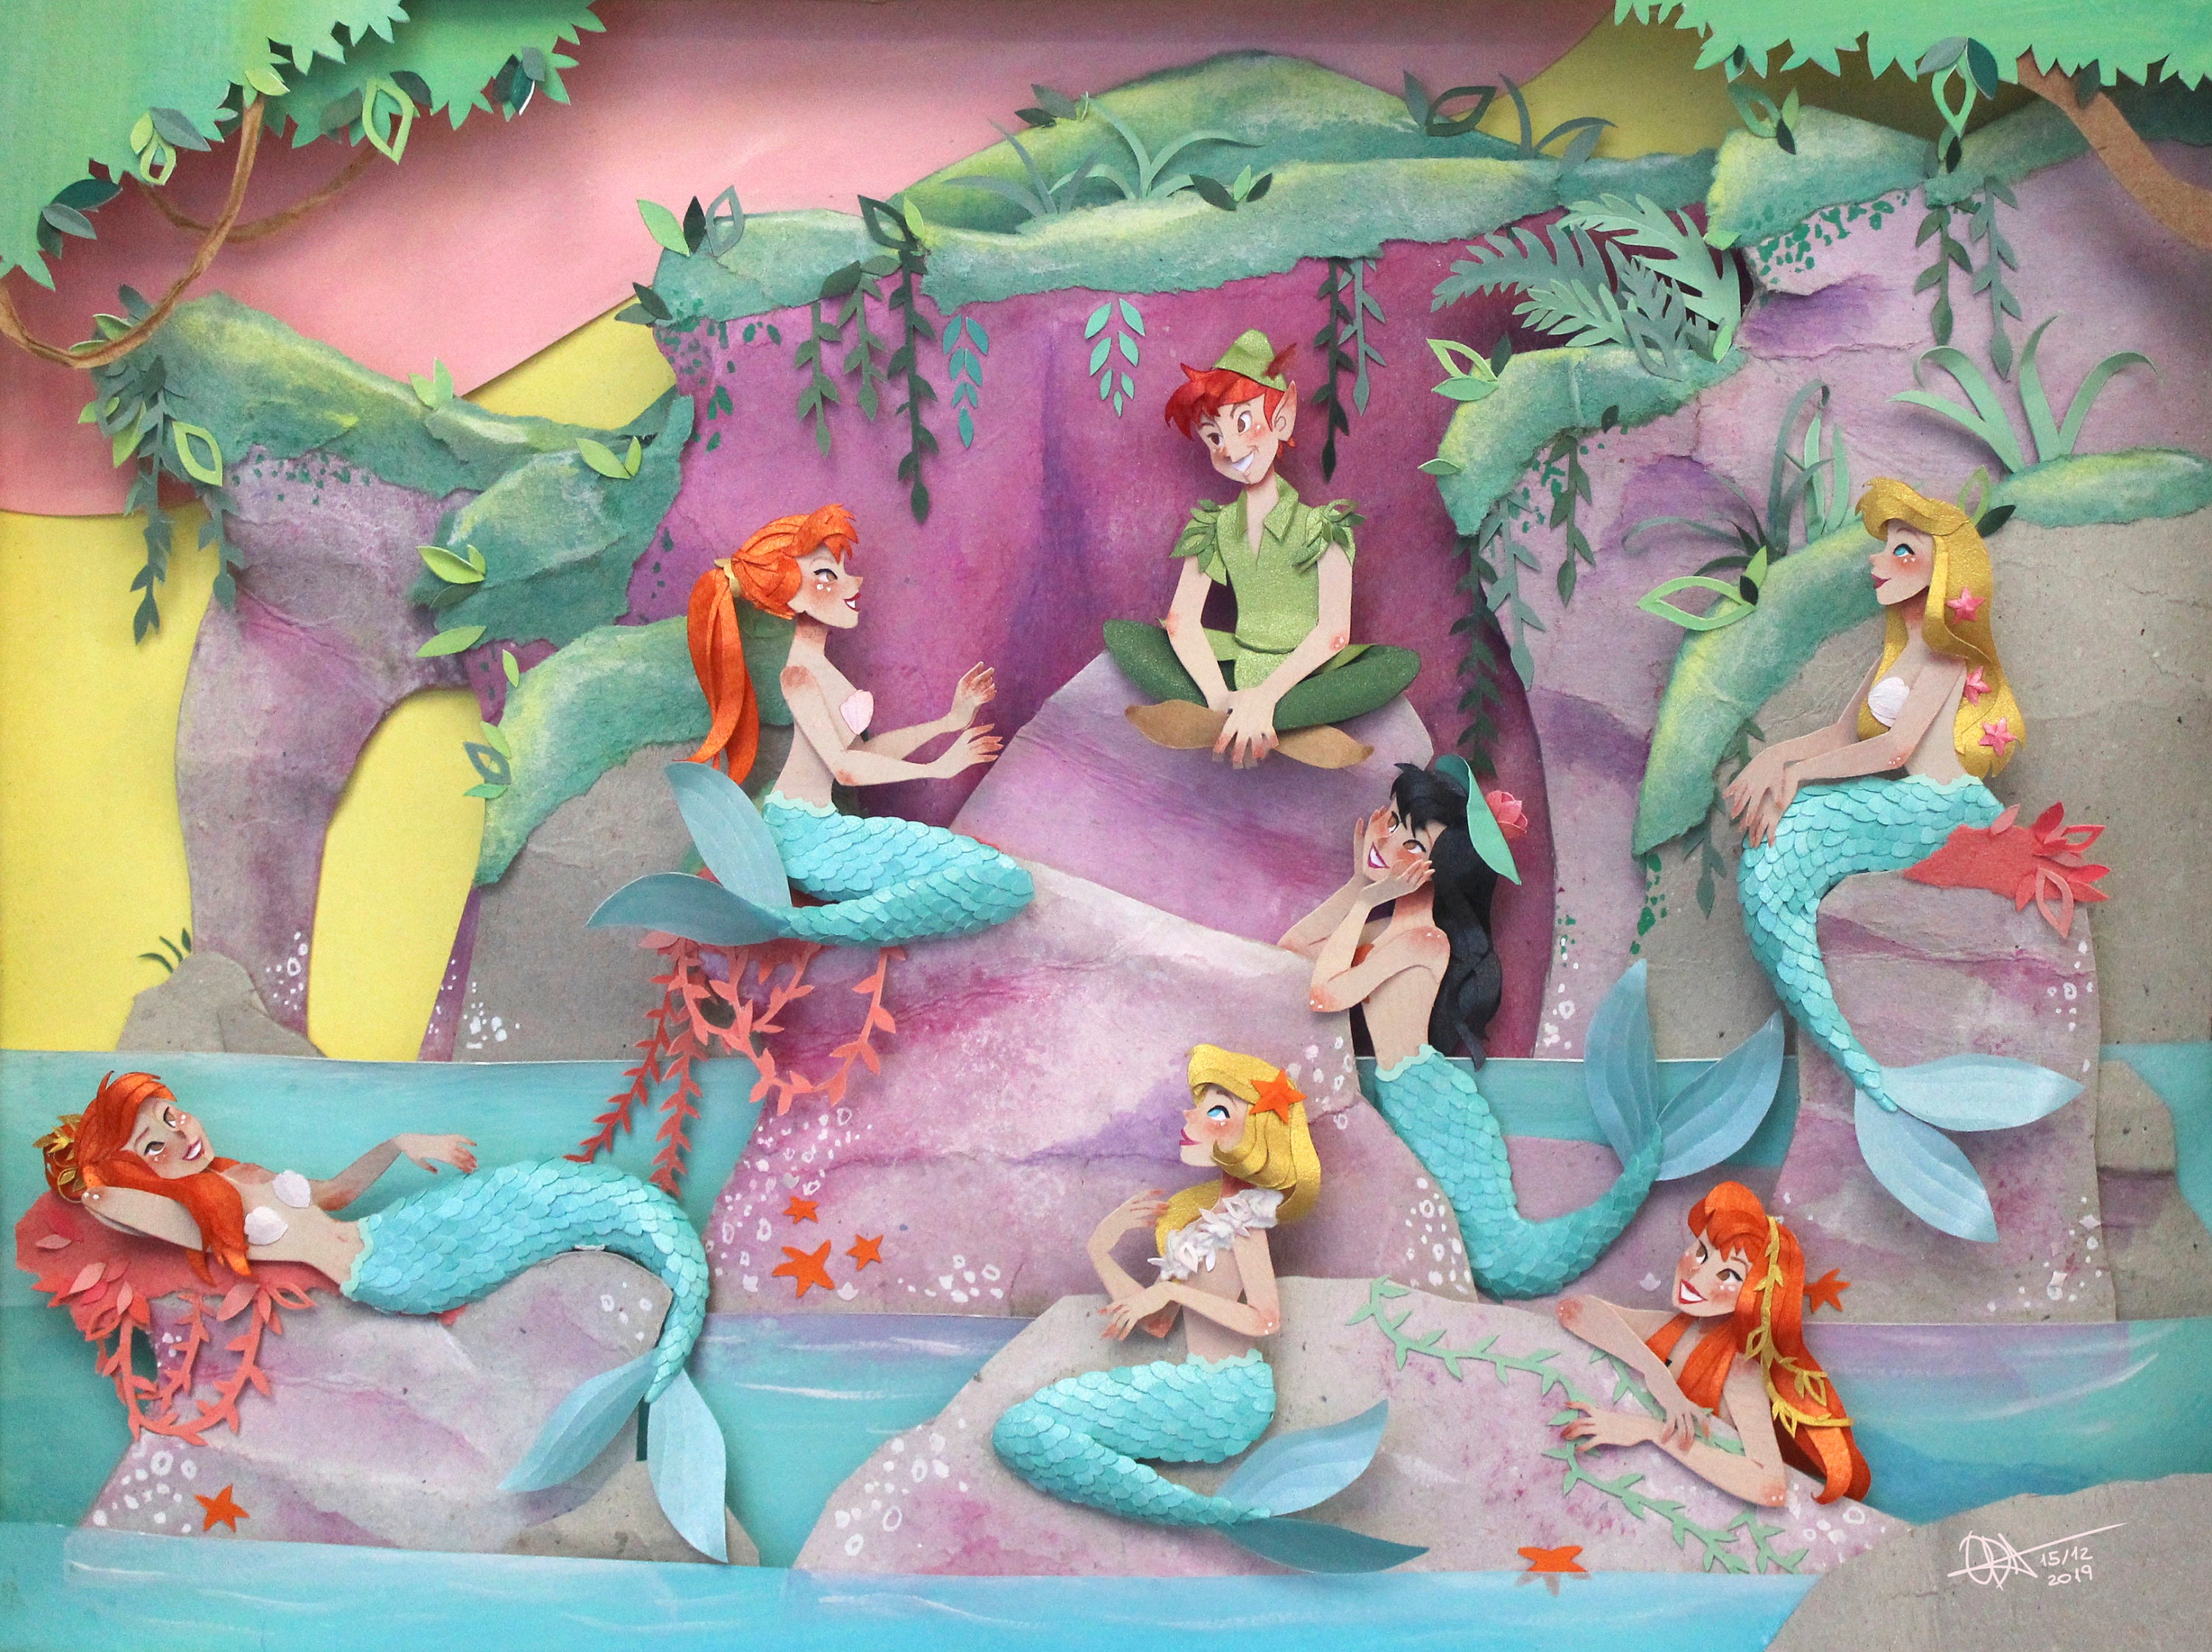 Peter Pan Mermaid Lagoon